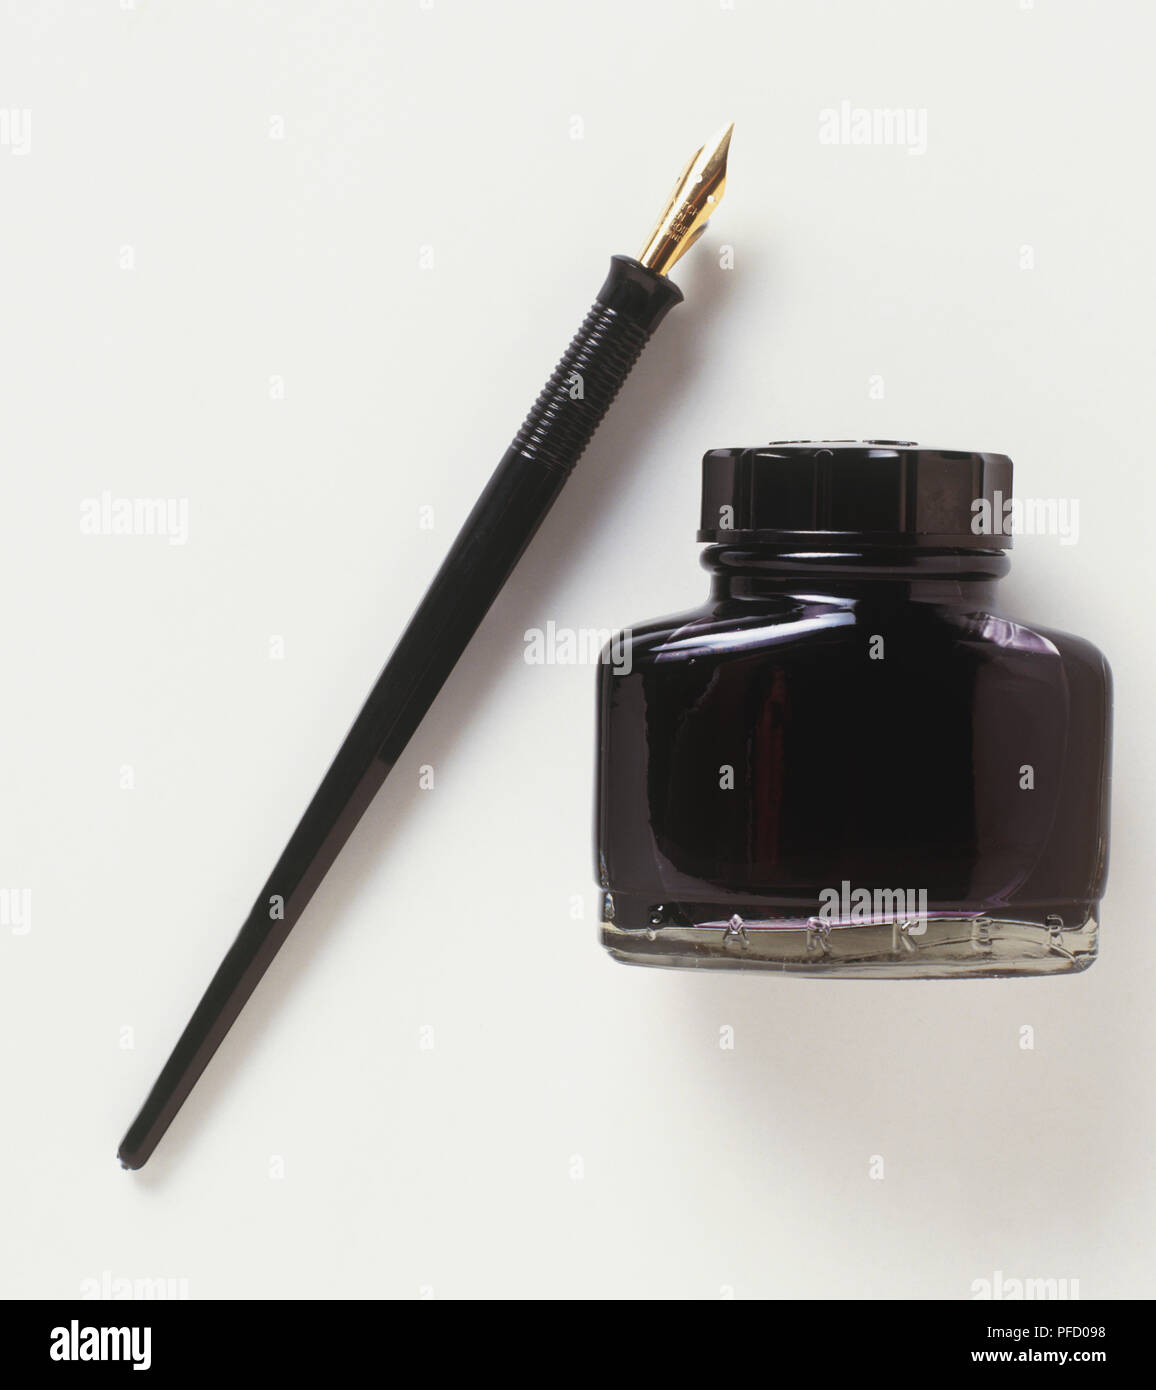 Penna stilografica e pot di inchiostro nero, vista frontale. Foto Stock